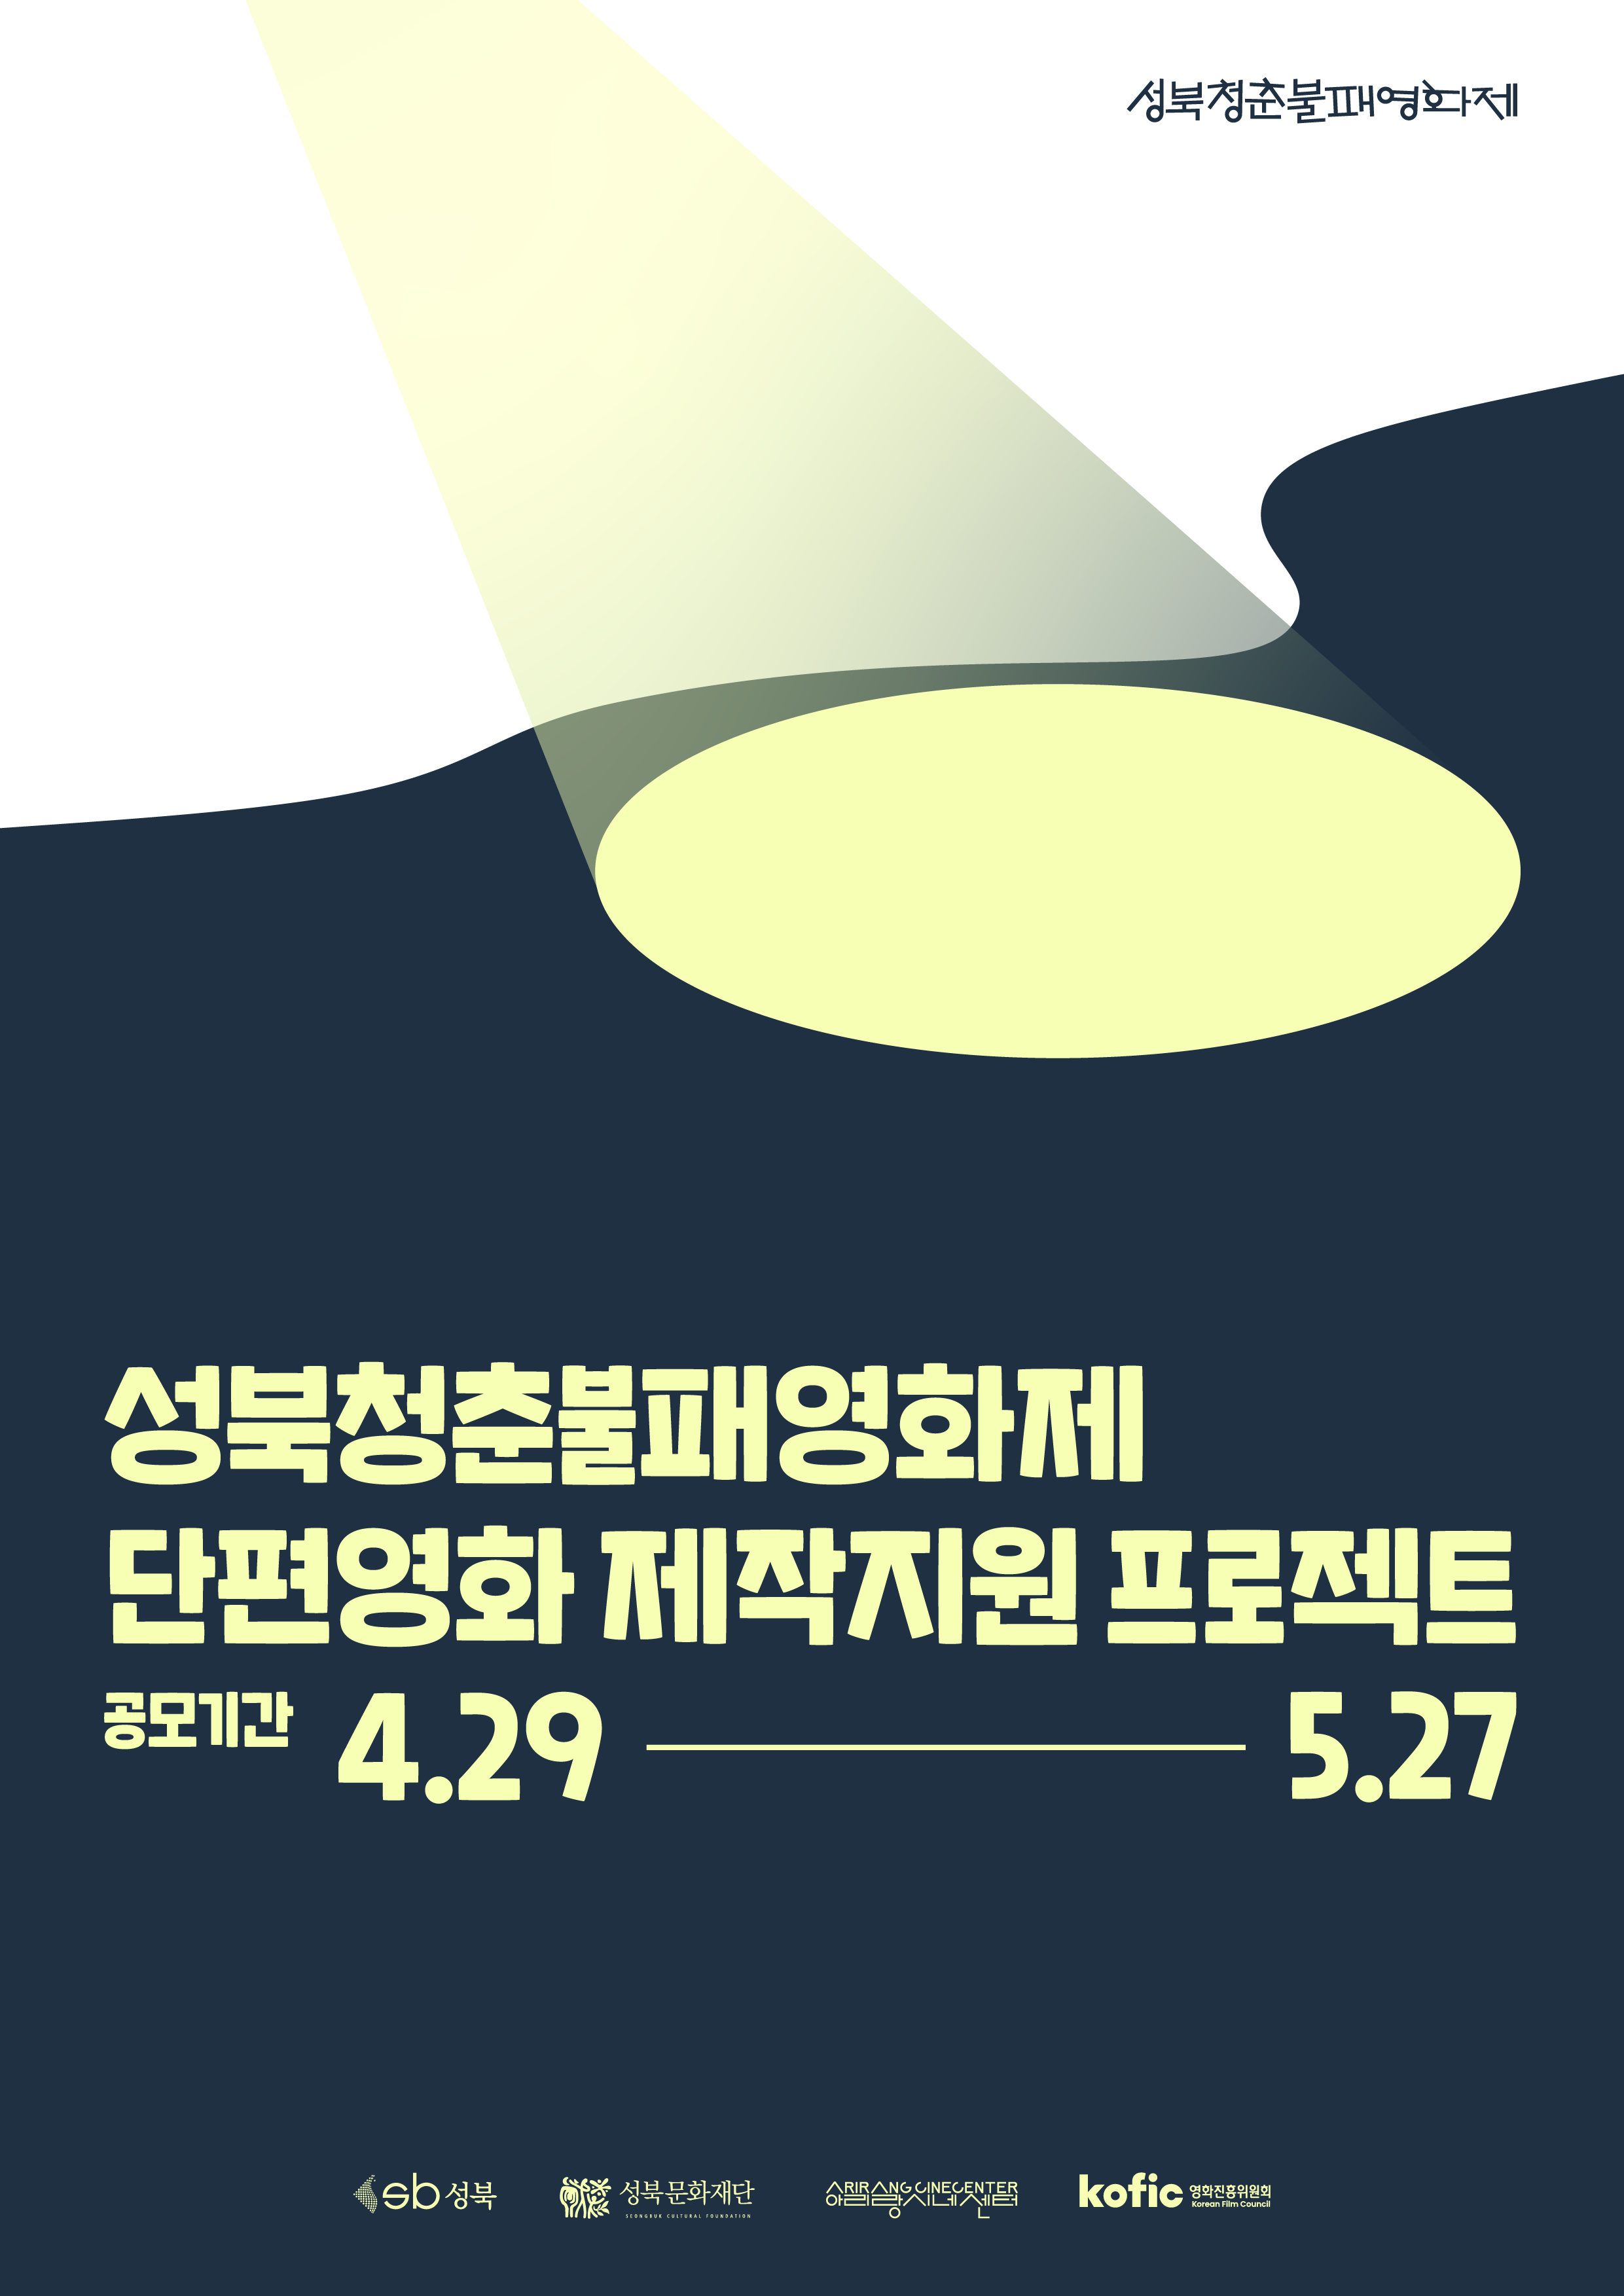 성북청춘불패영화제 단편영화 제작지원 프로젝트 공모